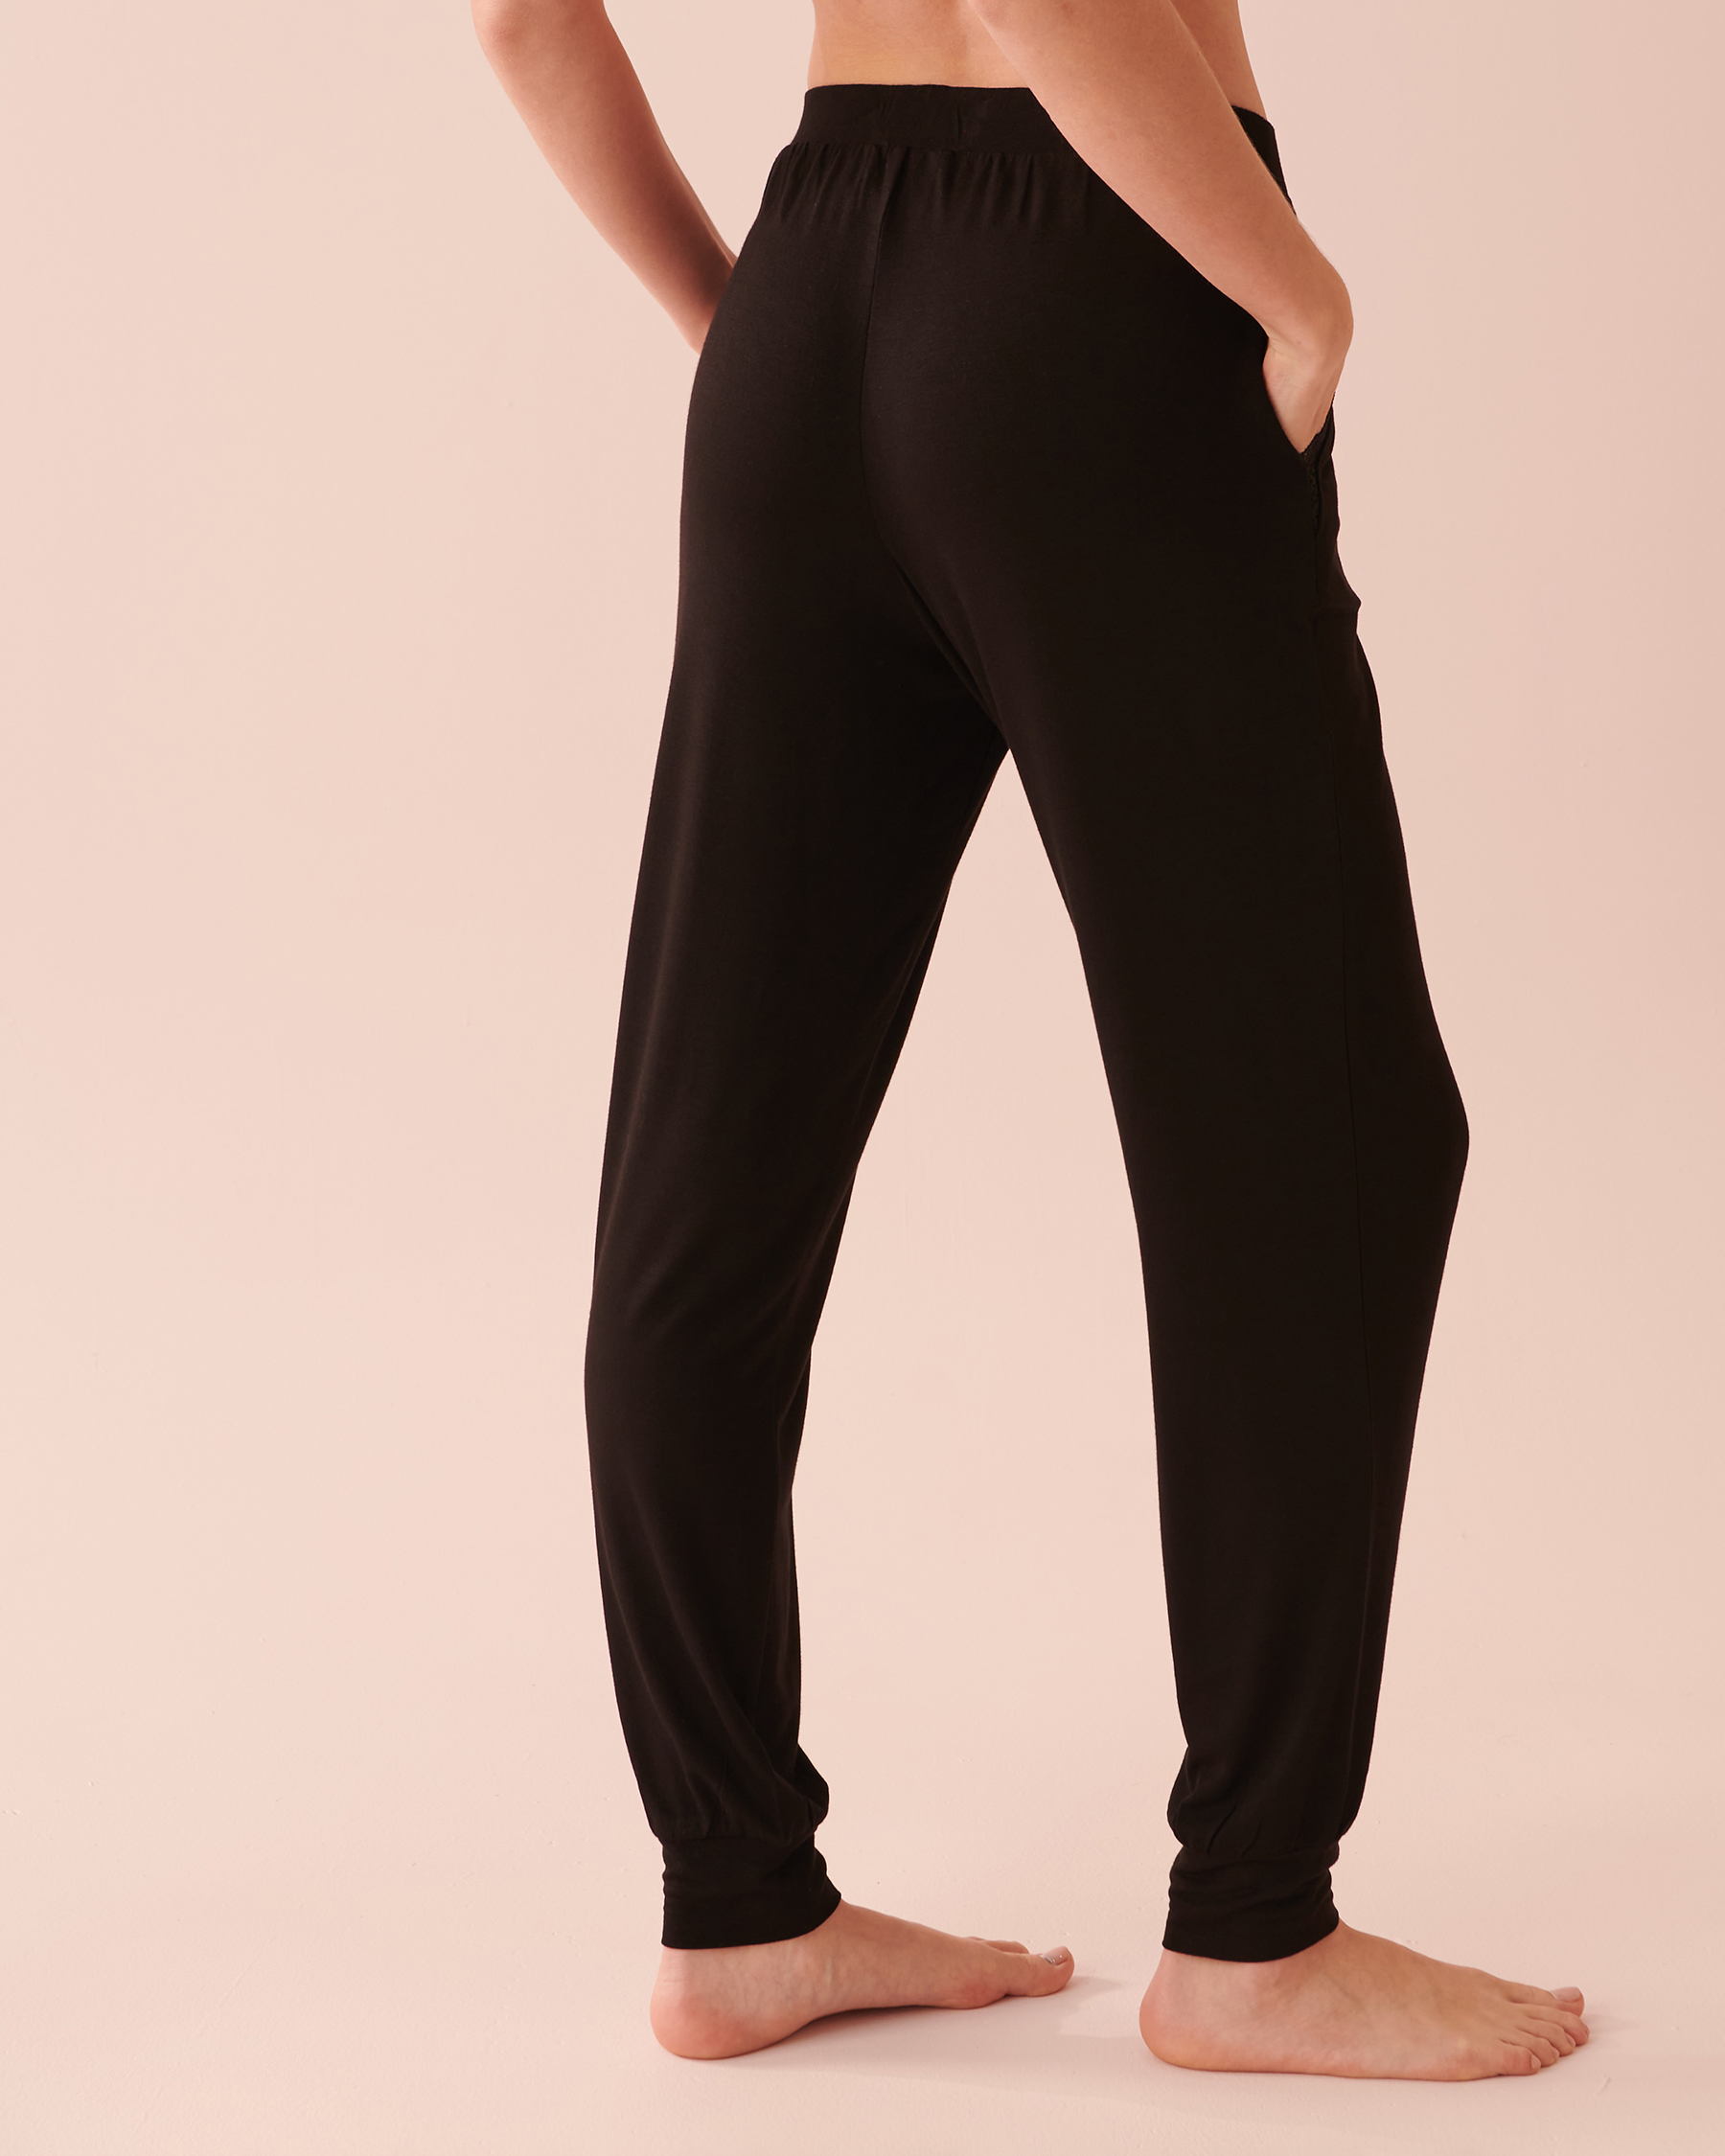 Crêped Jersey Pants - Beige - Ladies | H&M US